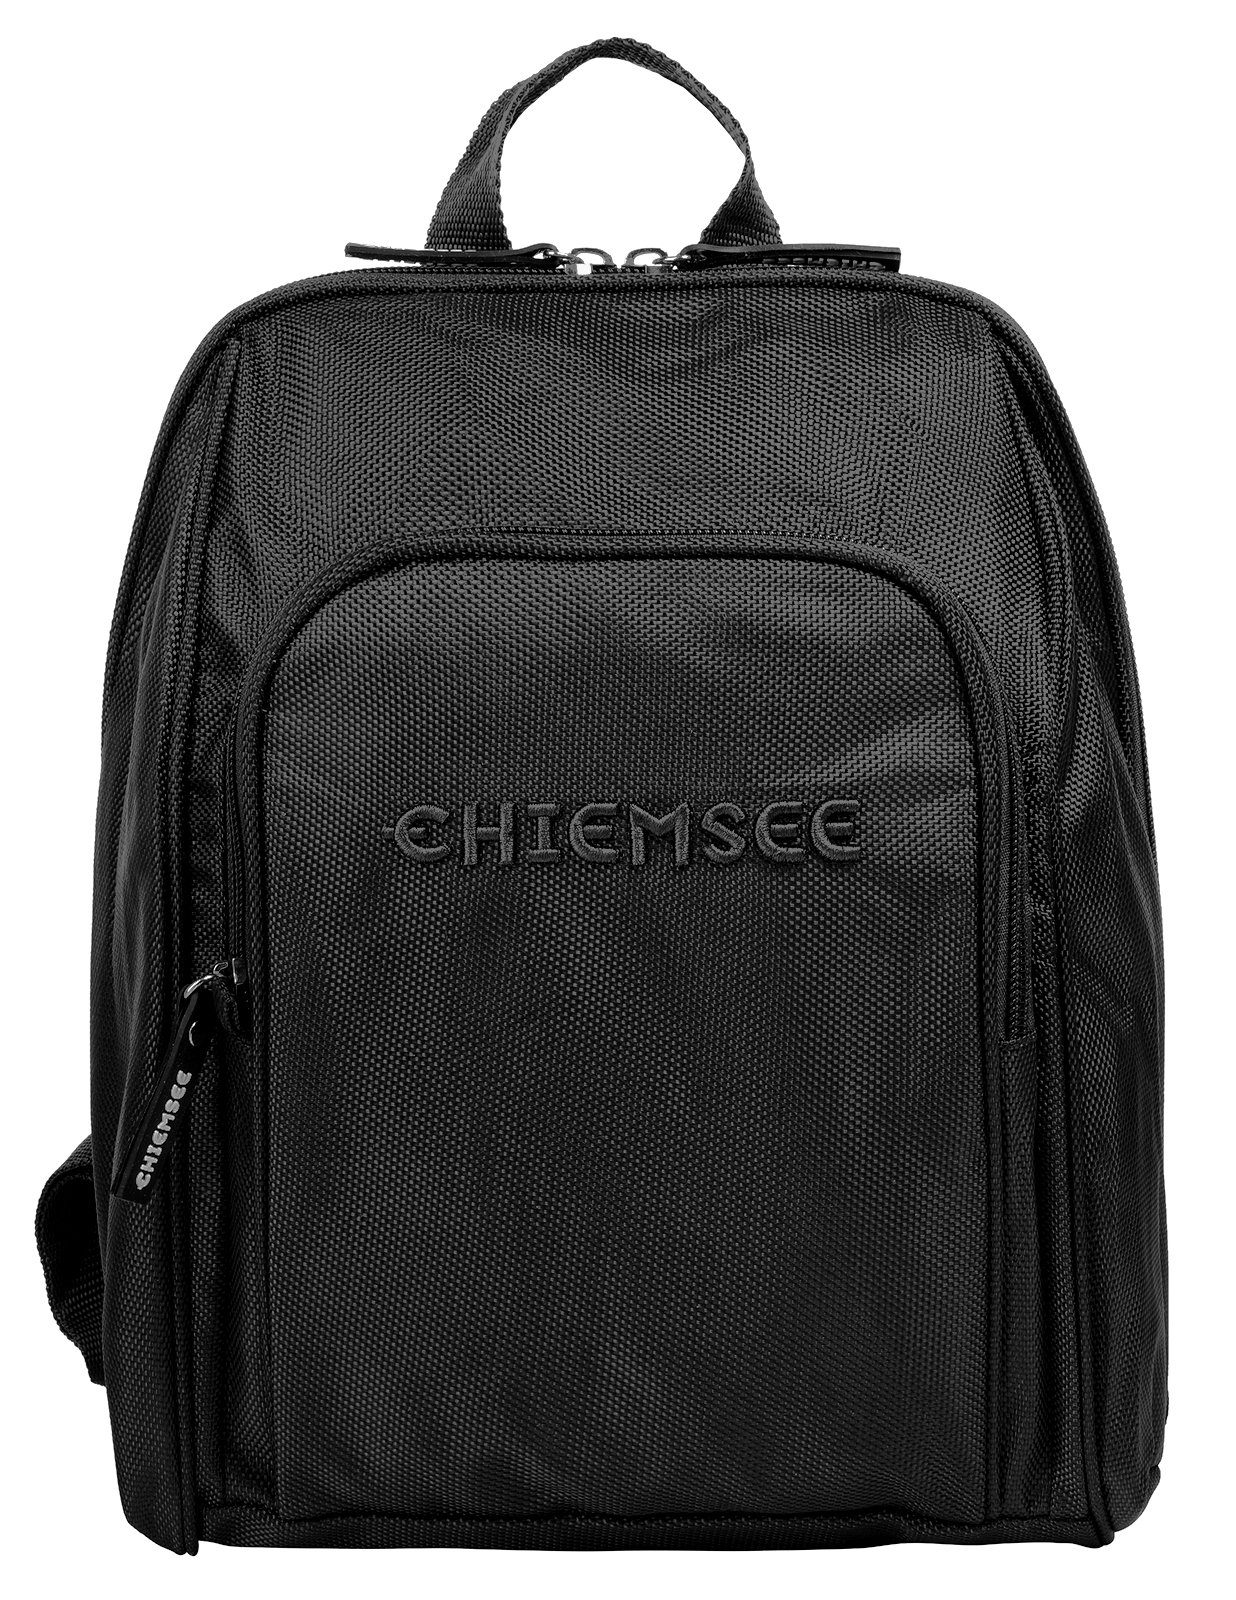 Chiemsee Cityrucksack schwarz